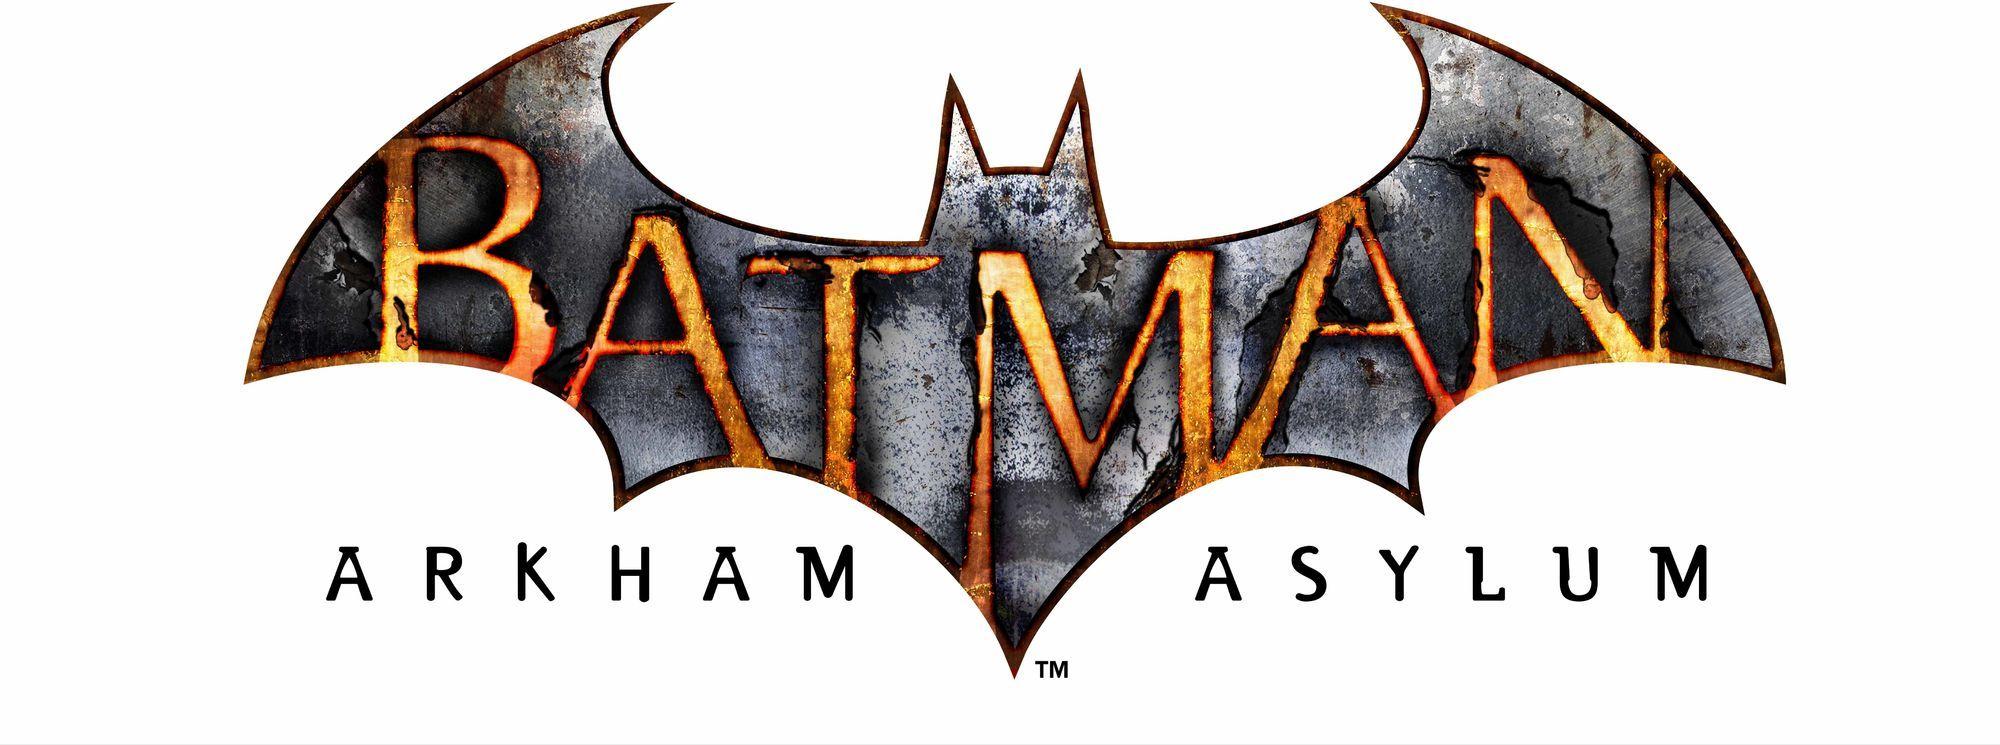 Batman Arkham Asylum Logo - Batman Arkham Asylum | Logopedia | FANDOM powered by Wikia